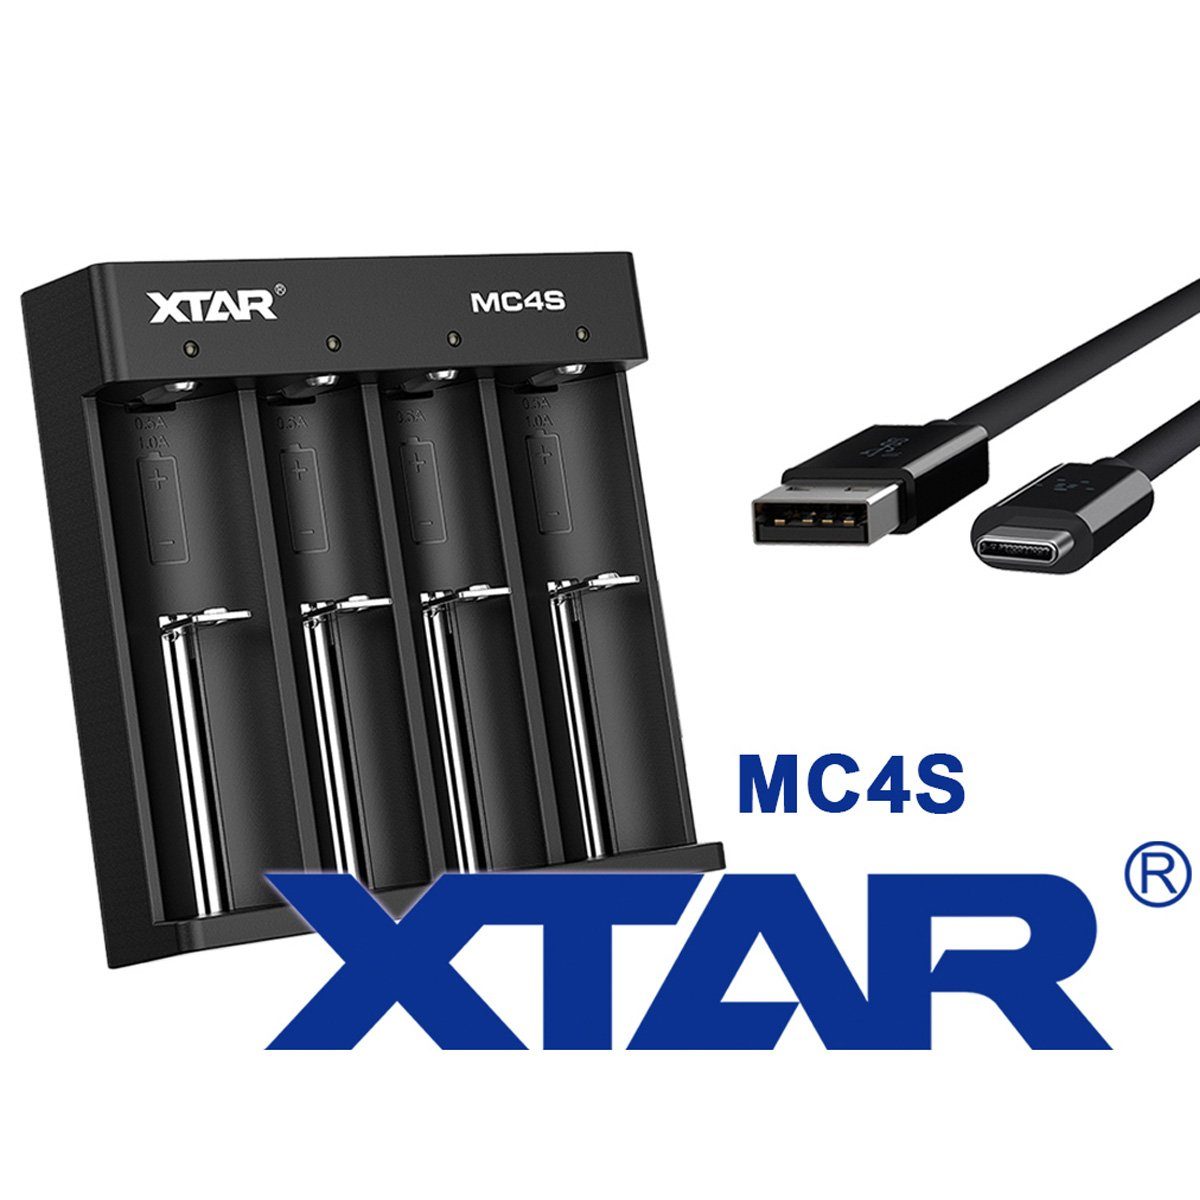 XTAR Schnell-Ladegerät für 1-4 Stück Li-Ion und Ni/MH Akkus, Ladegerät mit Rundzellen-Lader